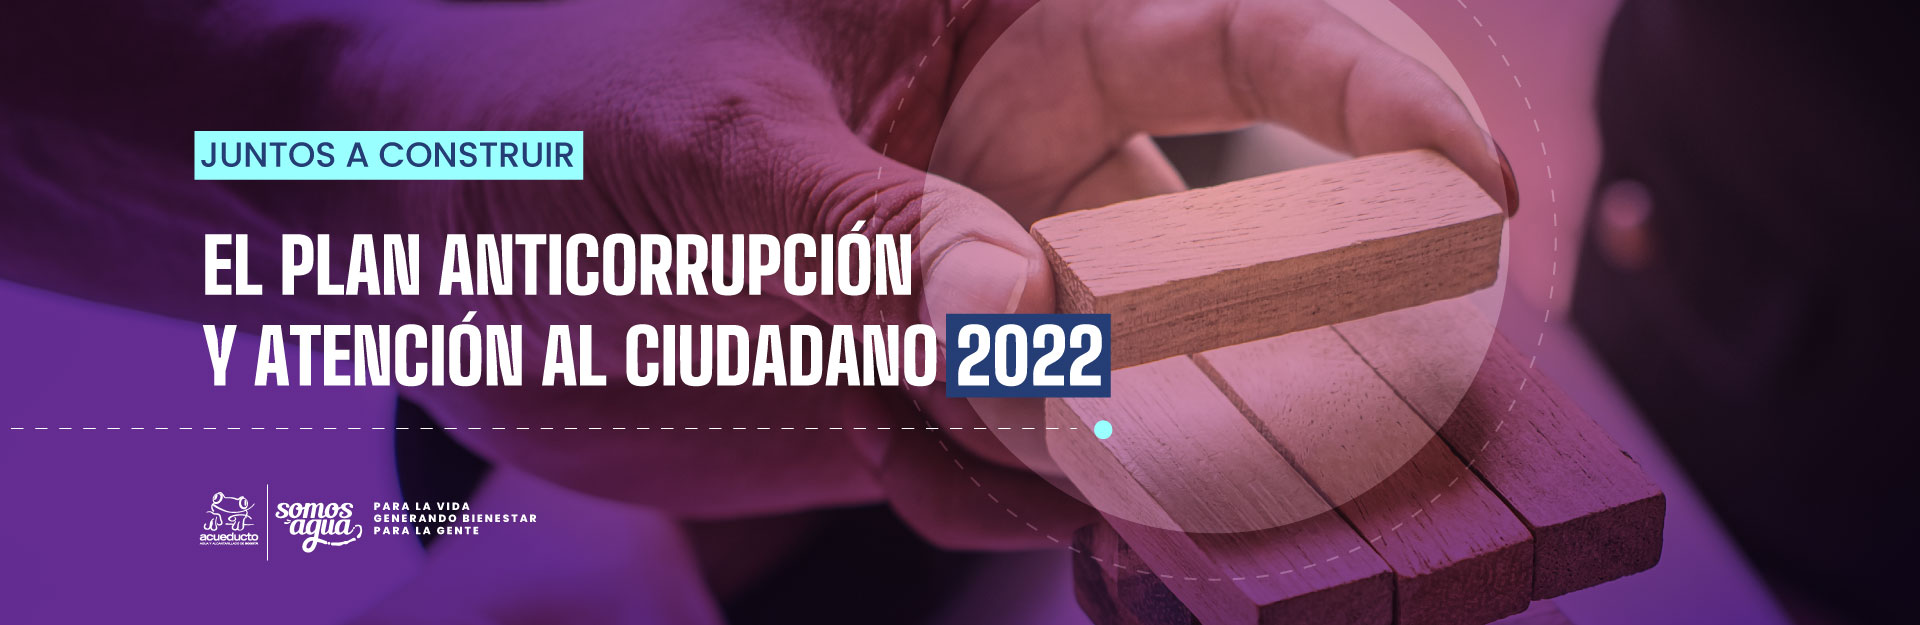 Plan Anticorrpción y atención al Ciudadano 2022